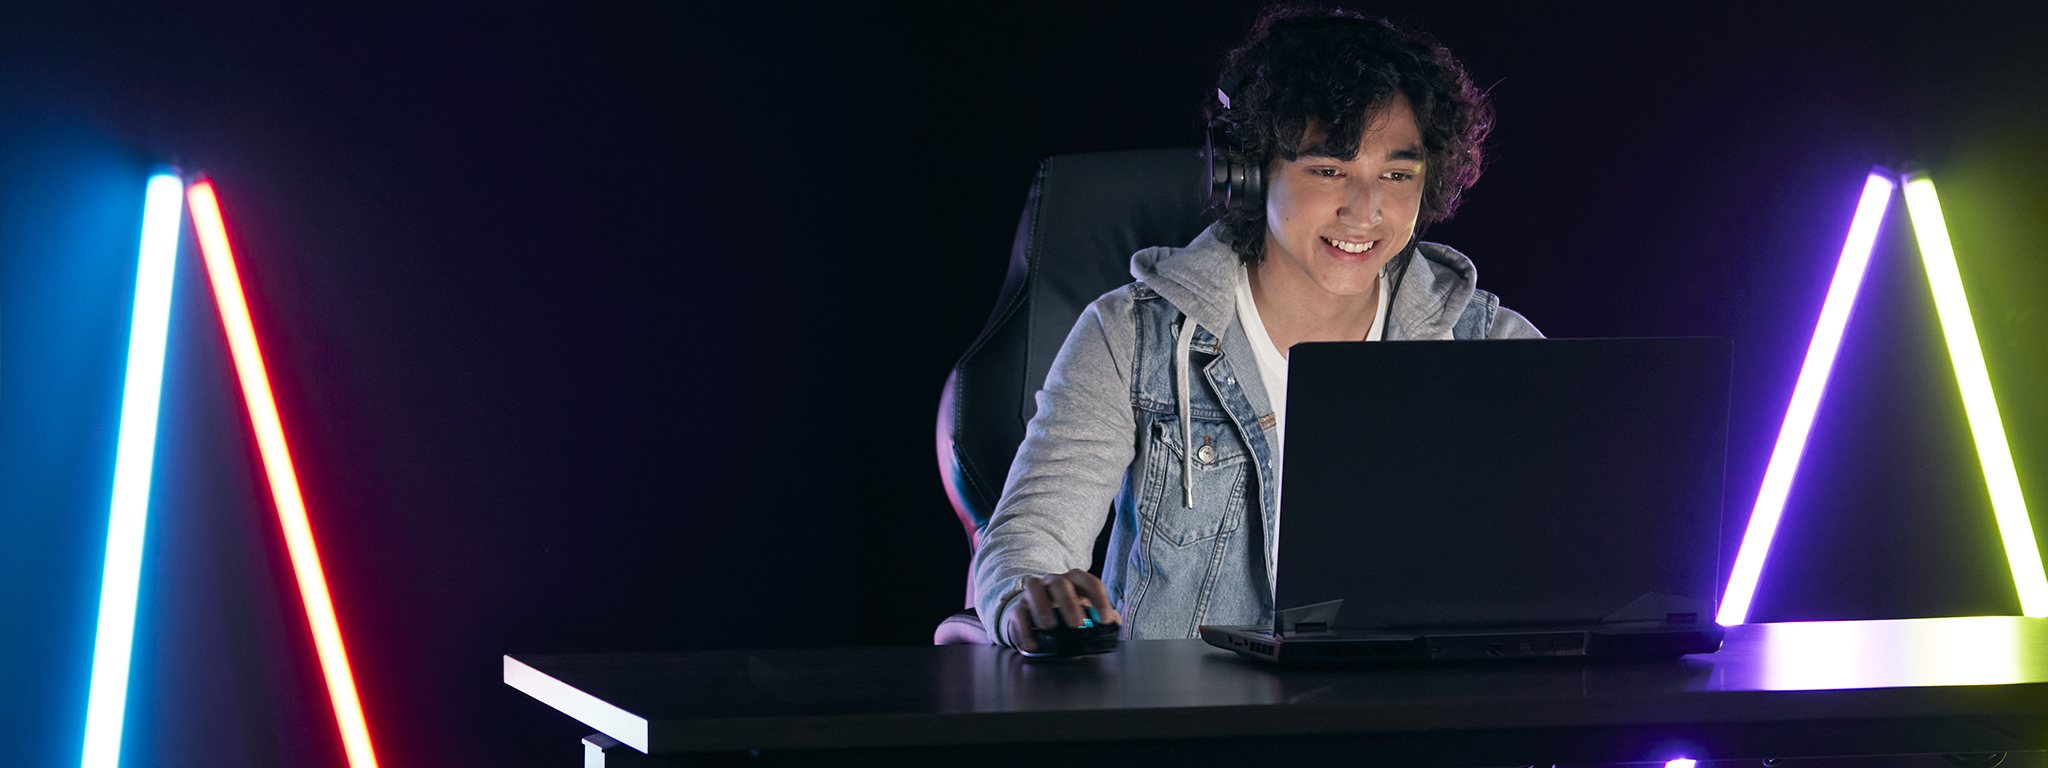 karanlık bir odada dizüstü bilgisayarında oyun oynayan genç bir oyuncu